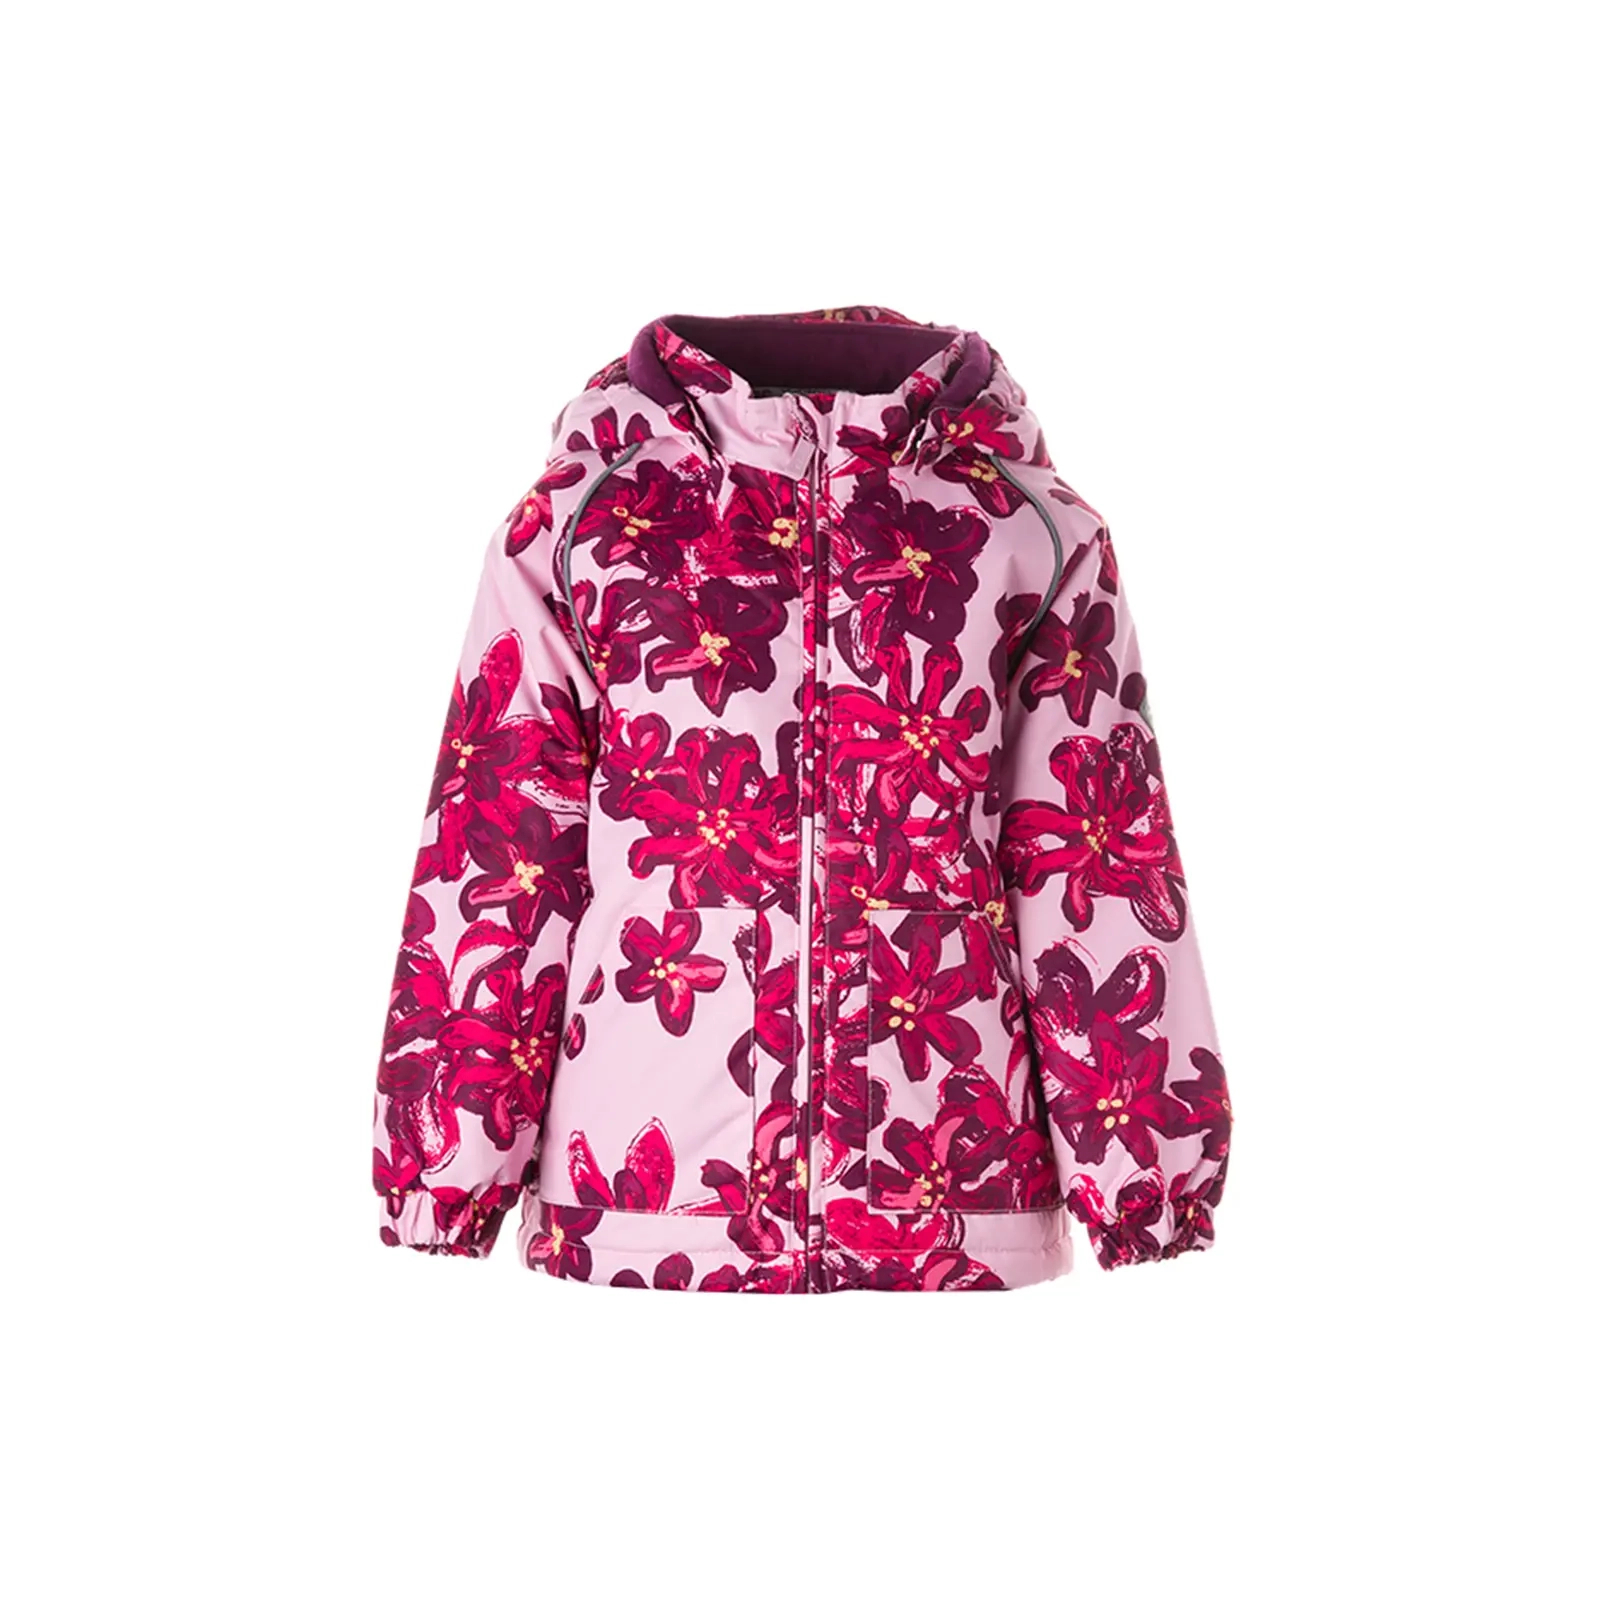 Куртка Huppa VIRGO 1 17210114 розовый с принтом 74 (4741632023802)